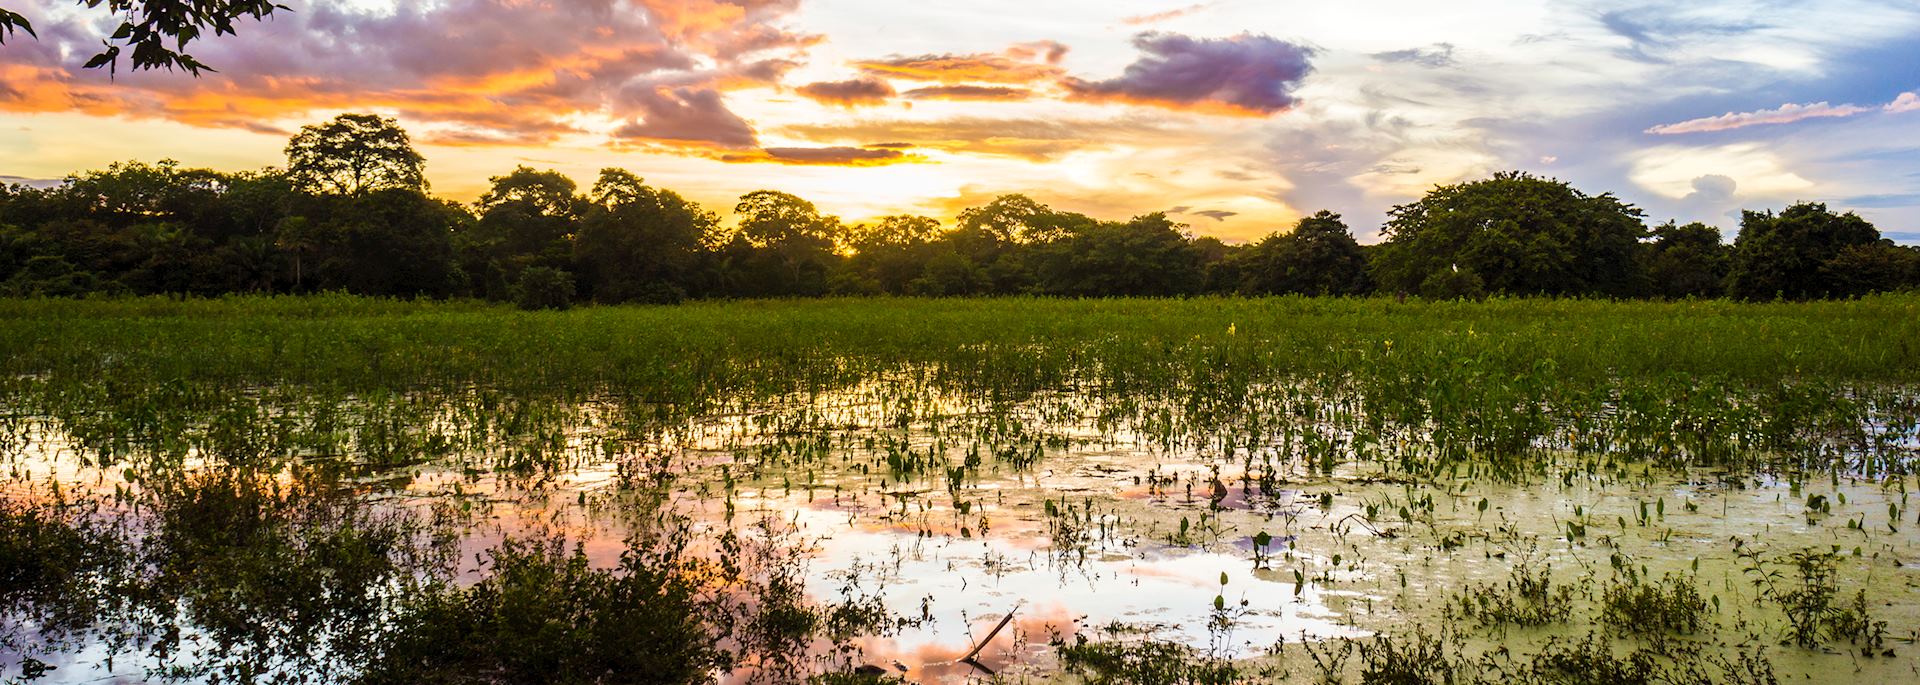 The Pantanal at sunset